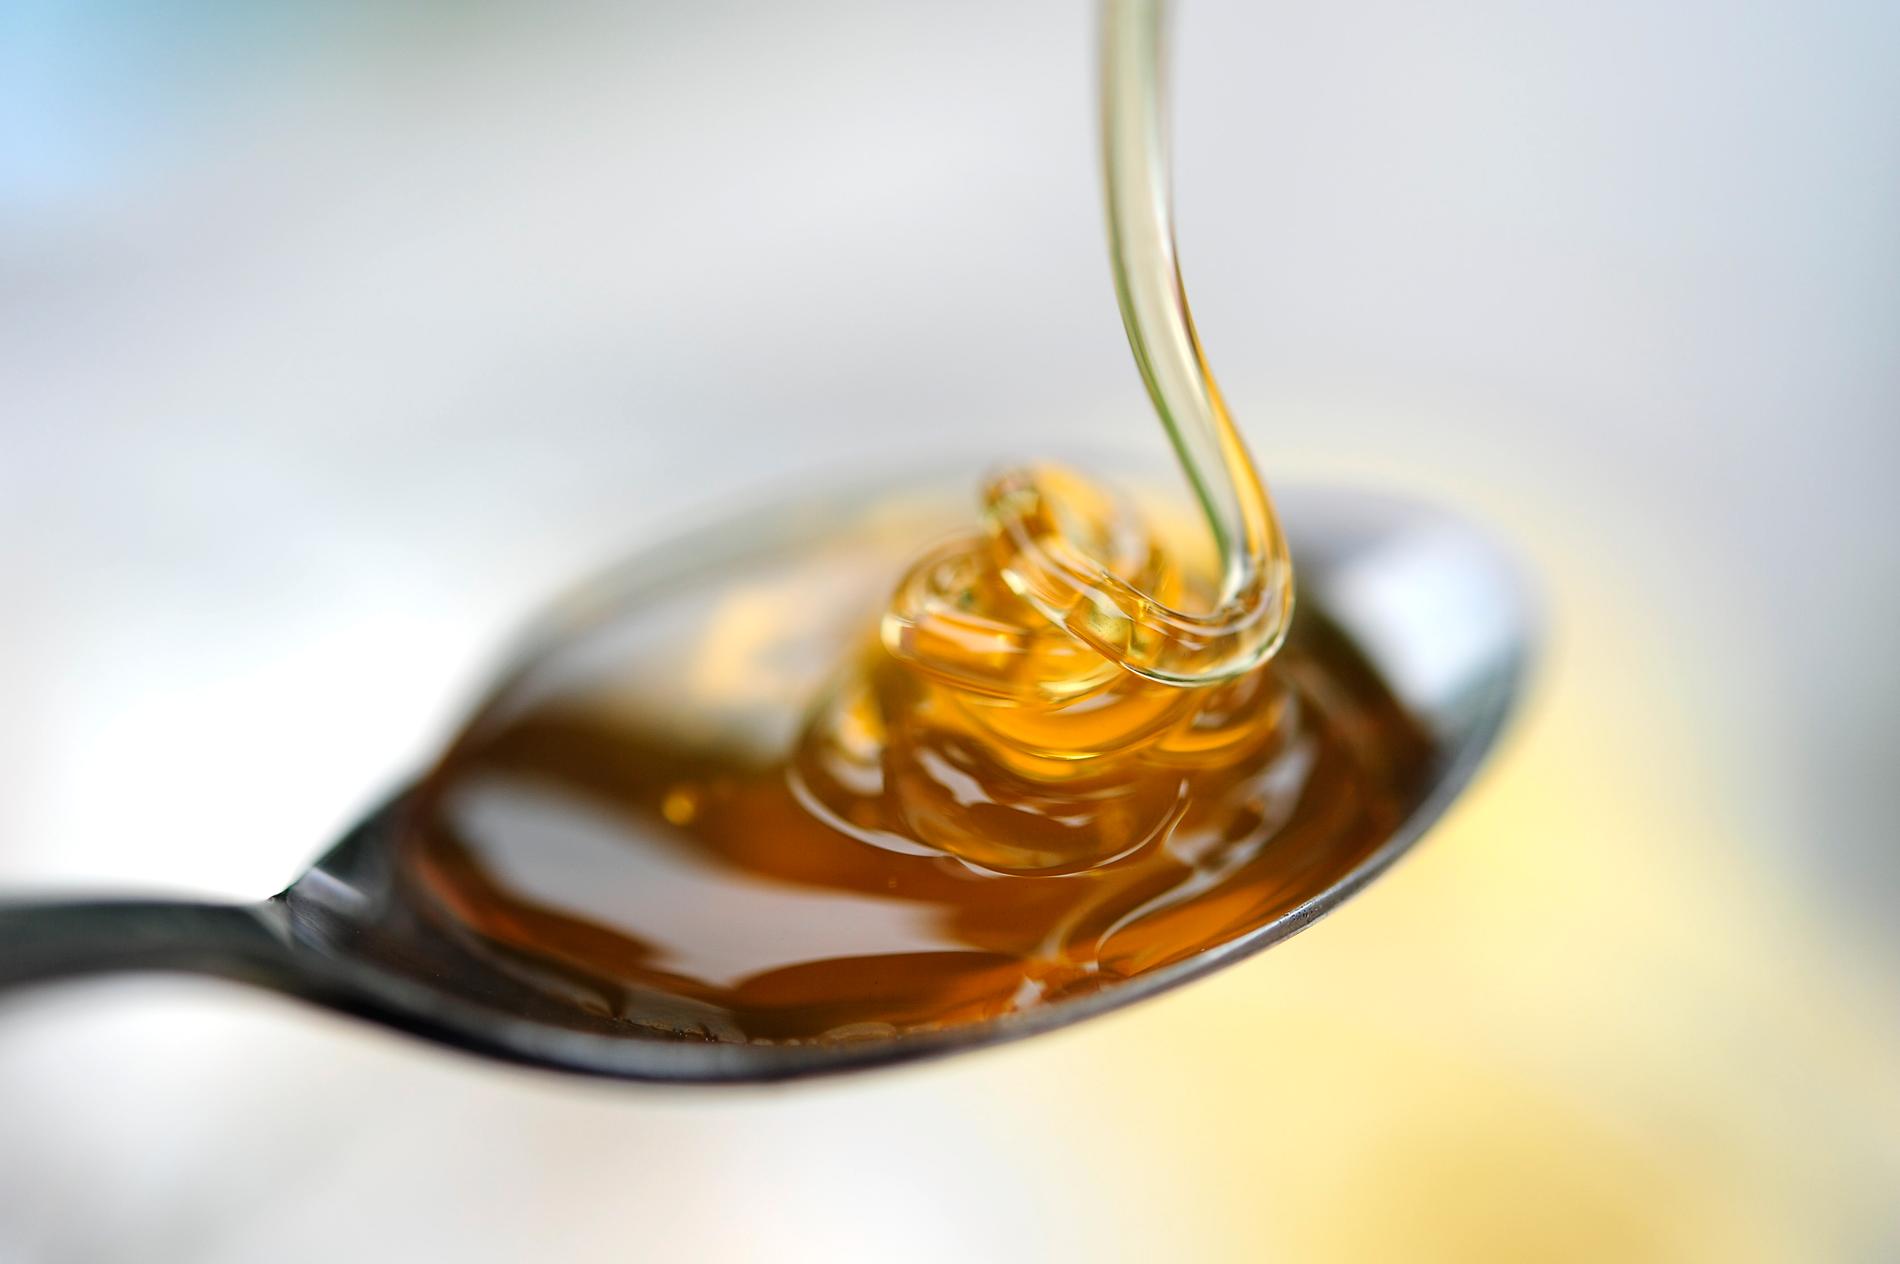 Honung är gott och innehåller nyttiga ännen, men är också ett av de livsmedel det fuskas mest med. En variant är att tillsätta socker i framställningen, en annan är att märka honungen med fel ursprung för att få ett högre pris. Arkivbild.